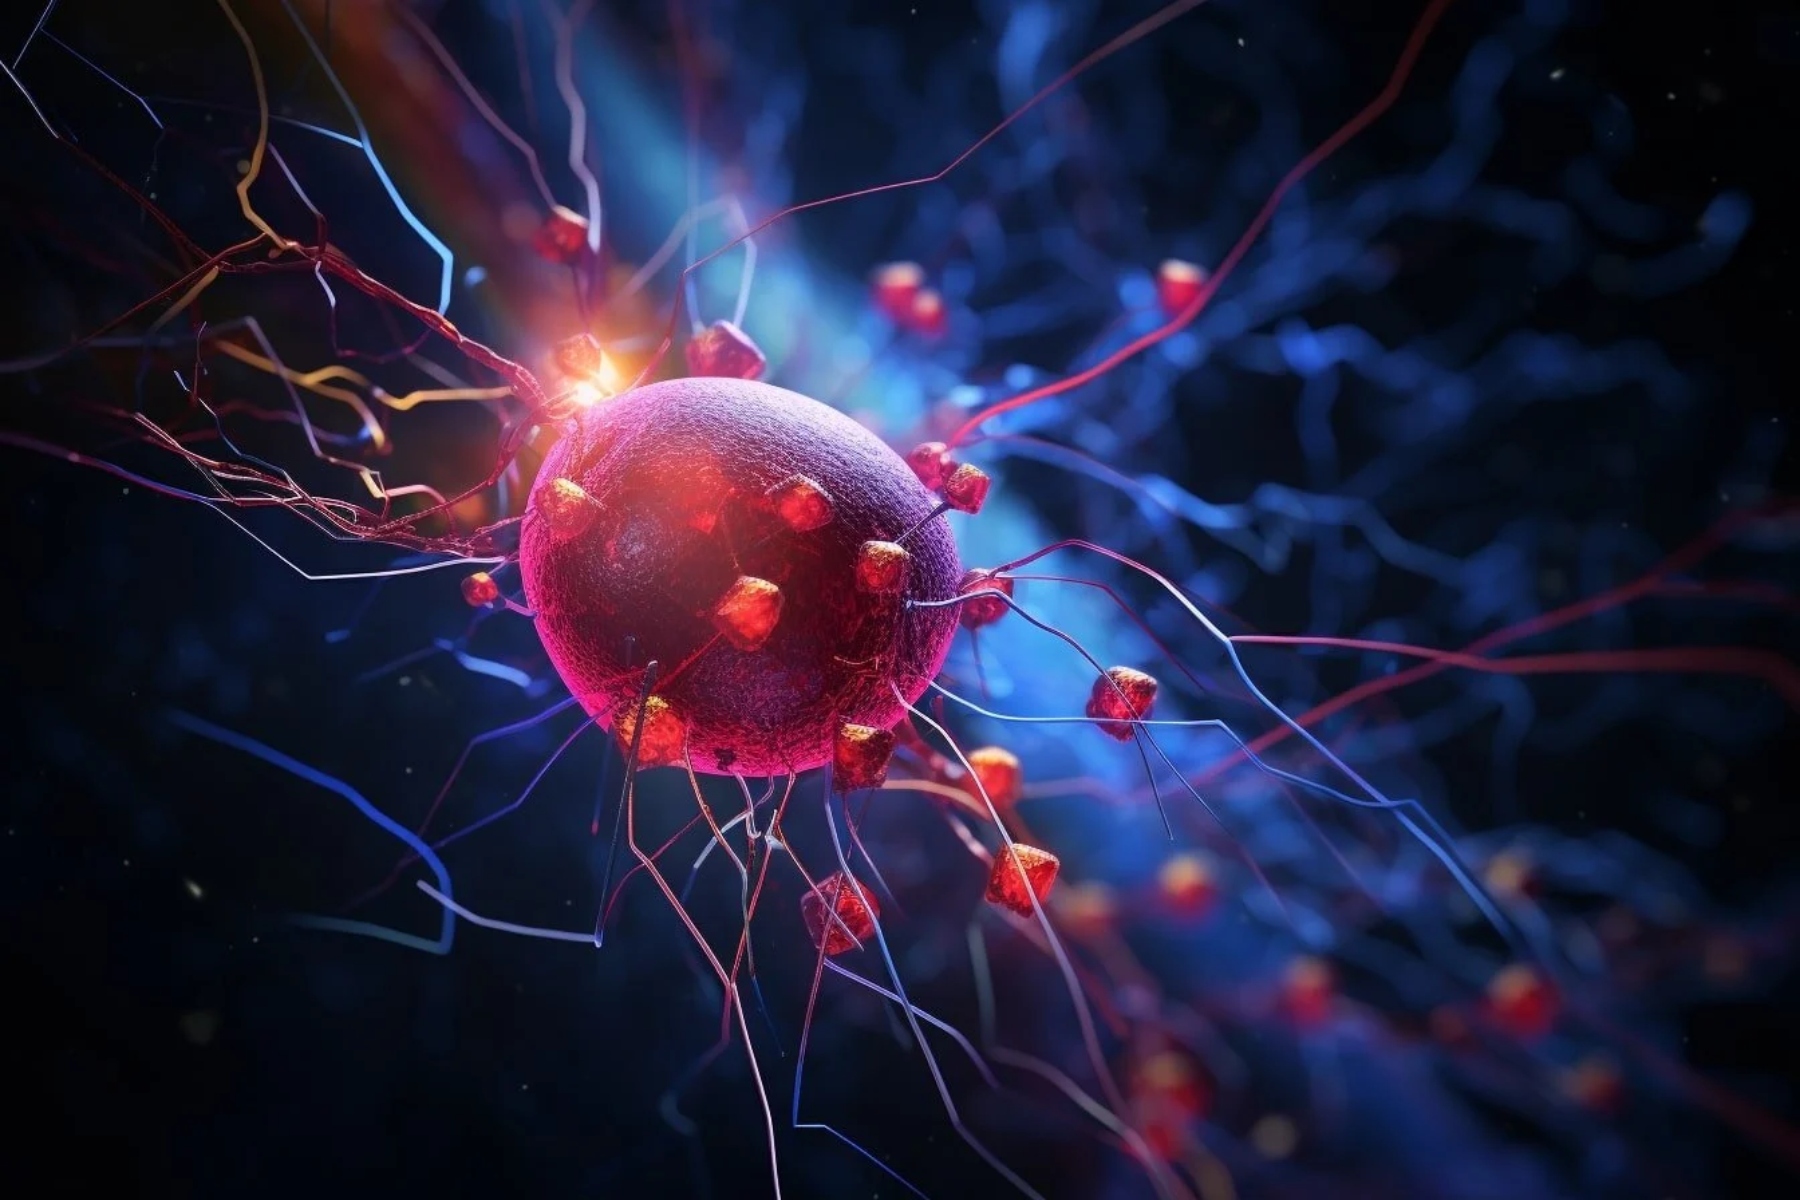 Σάκχαρο αίμα: Νευρώνες που παρακολουθούν και ρυθμίζουν τα επίπεδα σακχάρου στο αίμα;